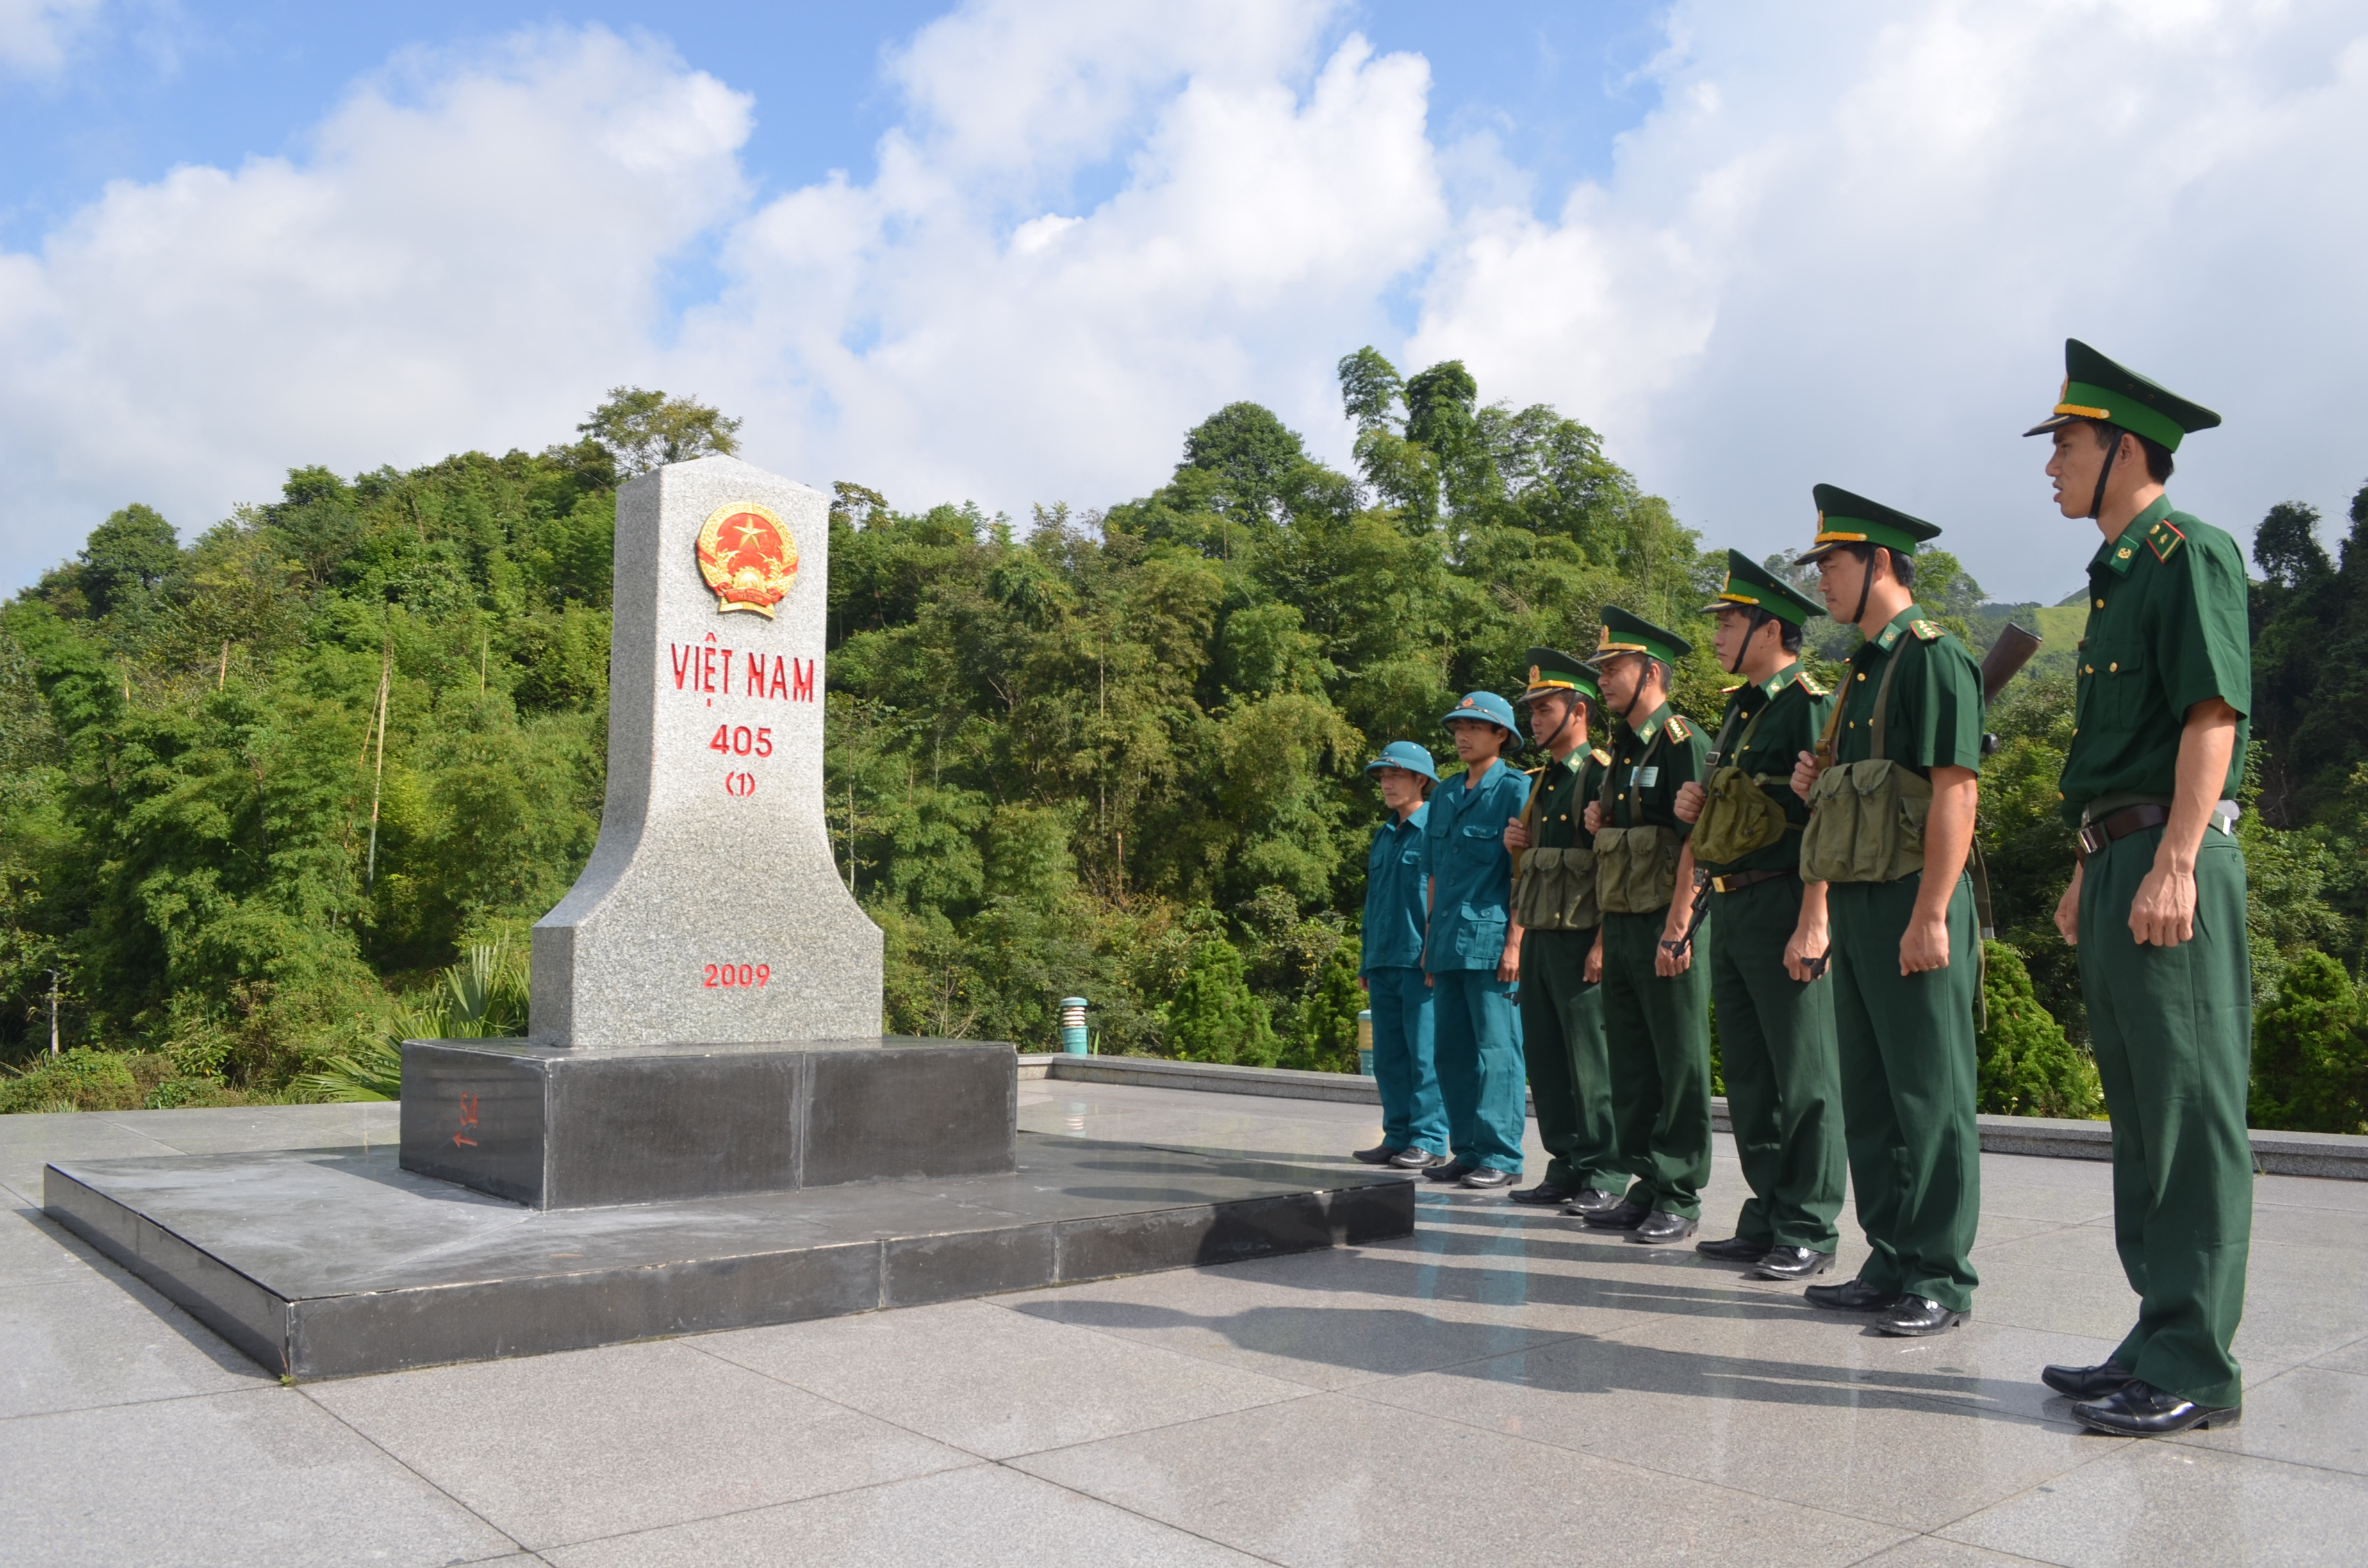 BĐBP Nghệ An phối hợp cùng dân quân địa phương bảo vệ chủ quyền an ninh biên giới. Ảnh: Hùng Phong